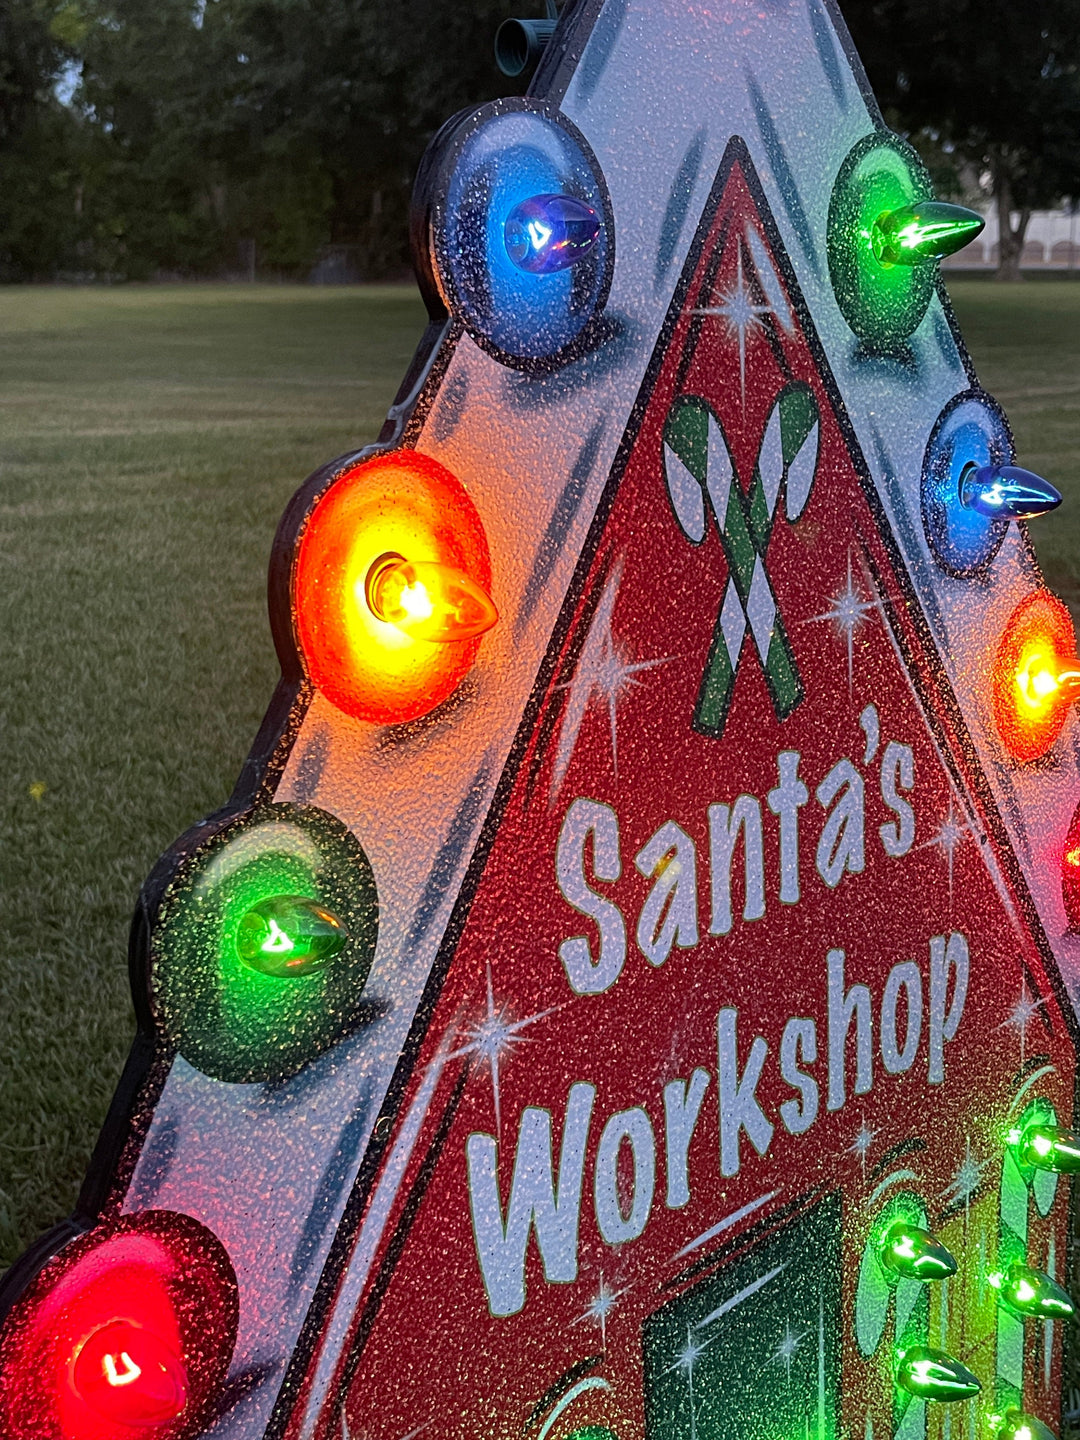 Lighted Santa's Workshop Yard art Sign Decoration